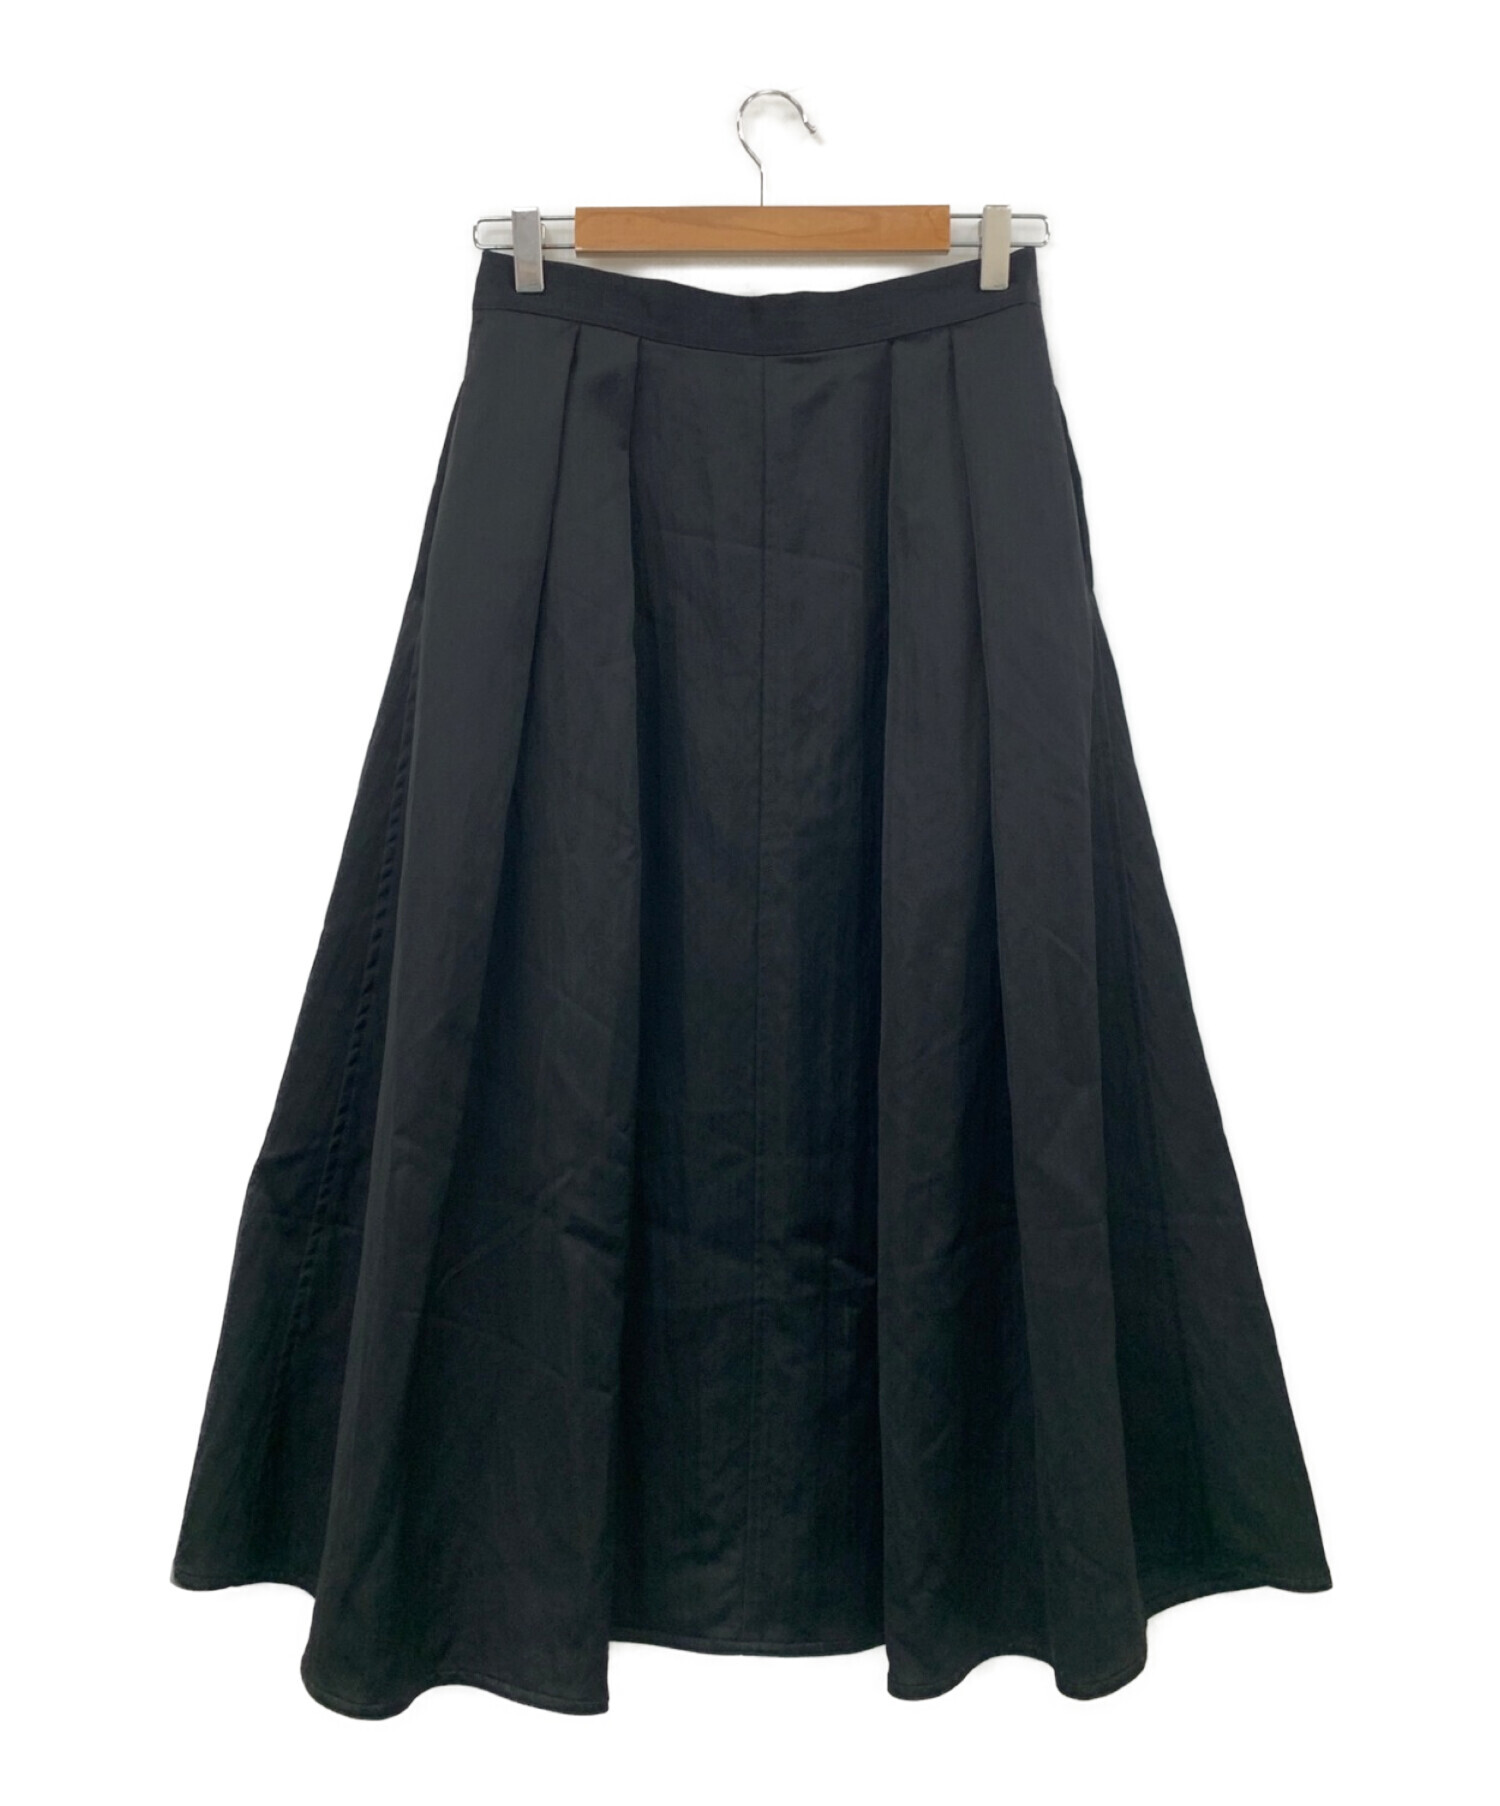 MUSE de Deuxieme Classe (ミューズ ドゥーズィエム クラス) サテンボリュームスカート ブラック サイズ:38